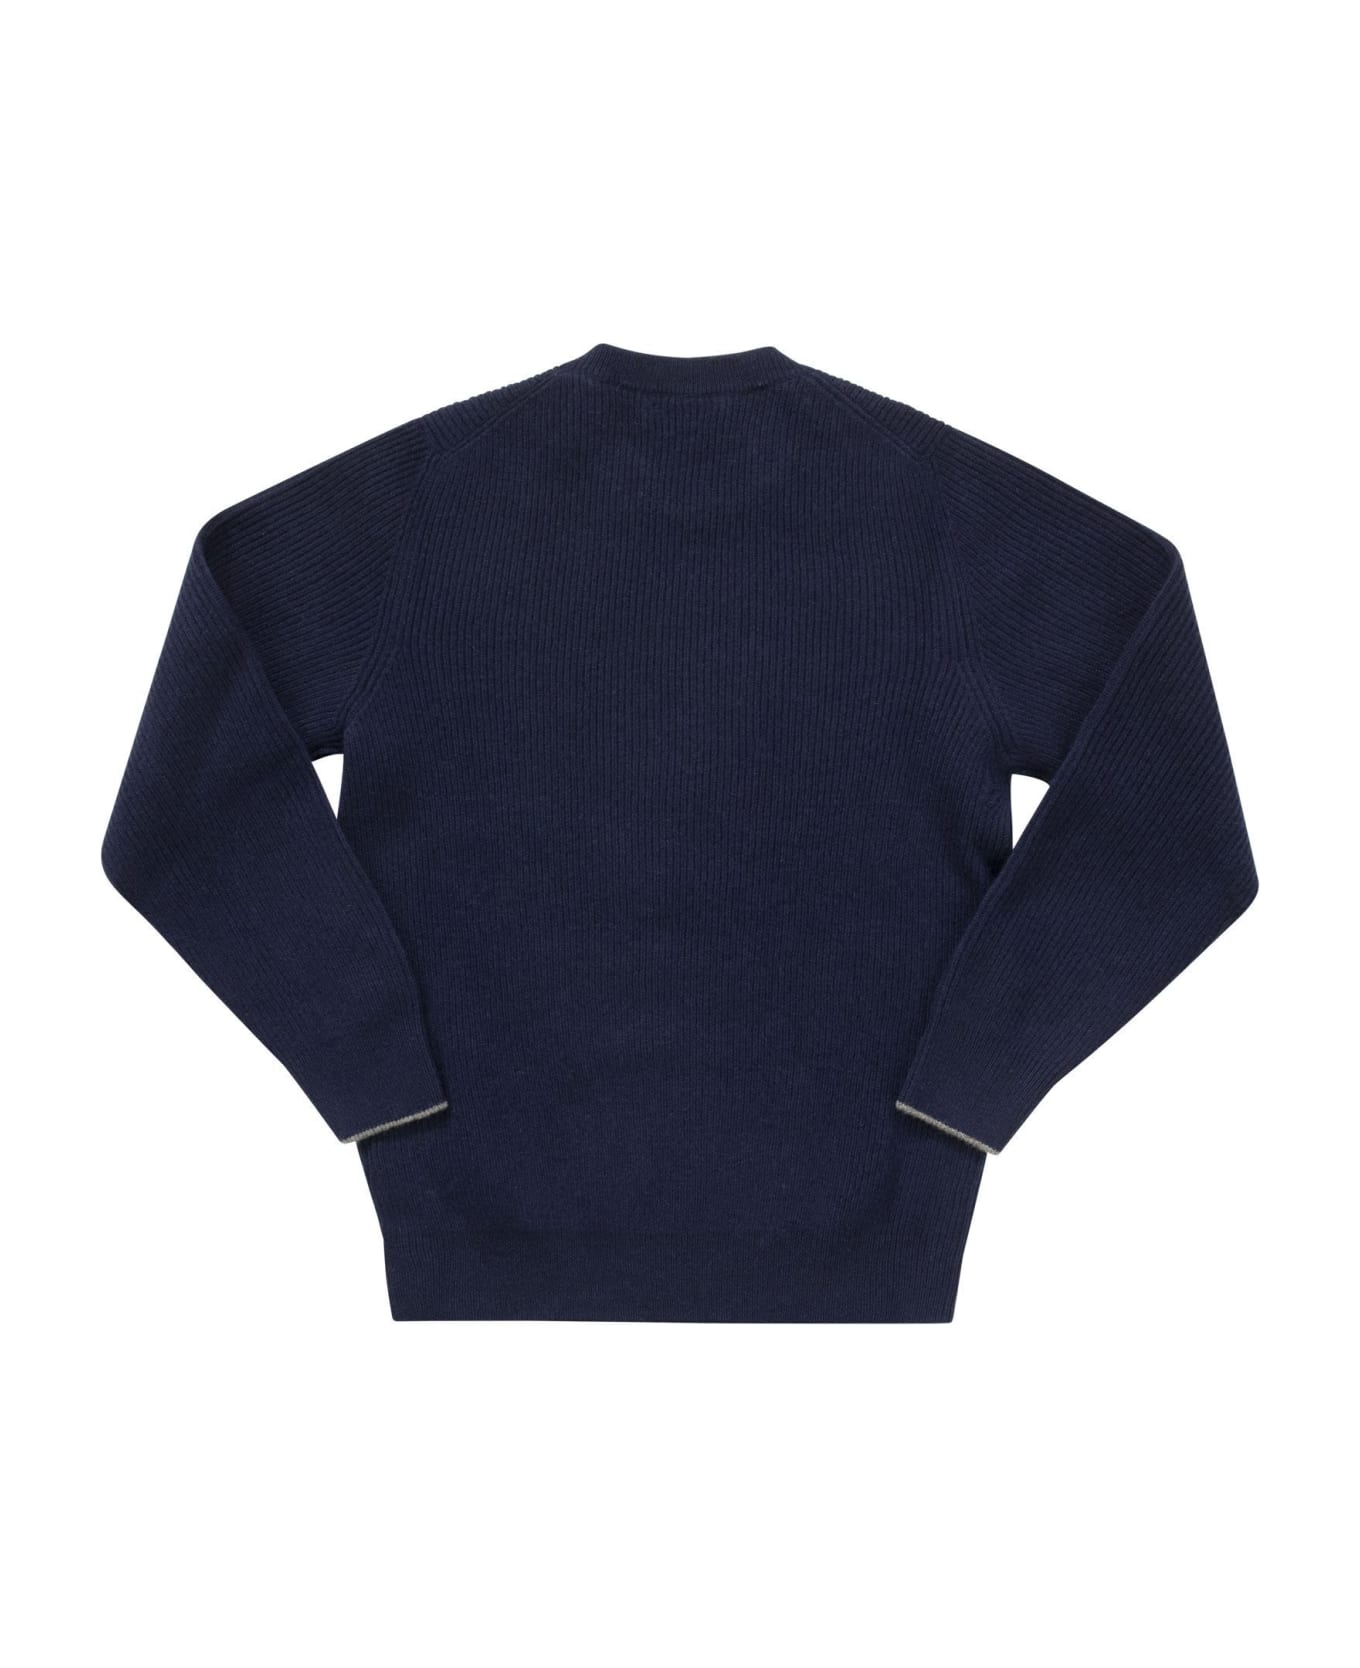 Brunello Cucinelli Cashmere Knitwear - Navy Blue